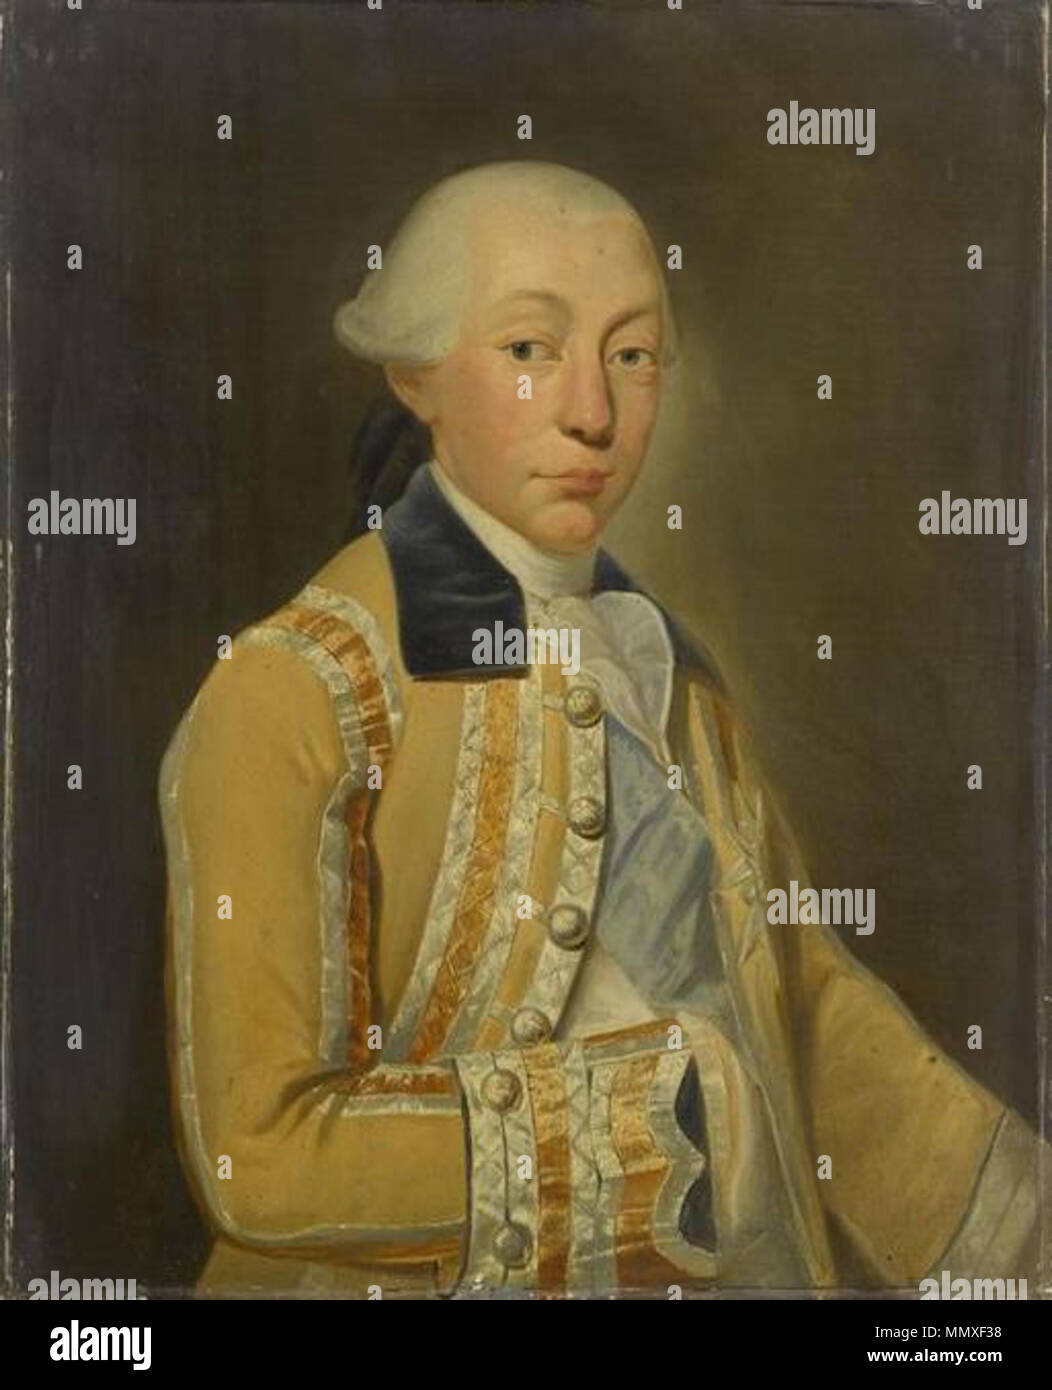 1774 portrait painting of Louis François Joseph de Bourbon, Prince of Conti by Auguste de Châtillon Stock Photo